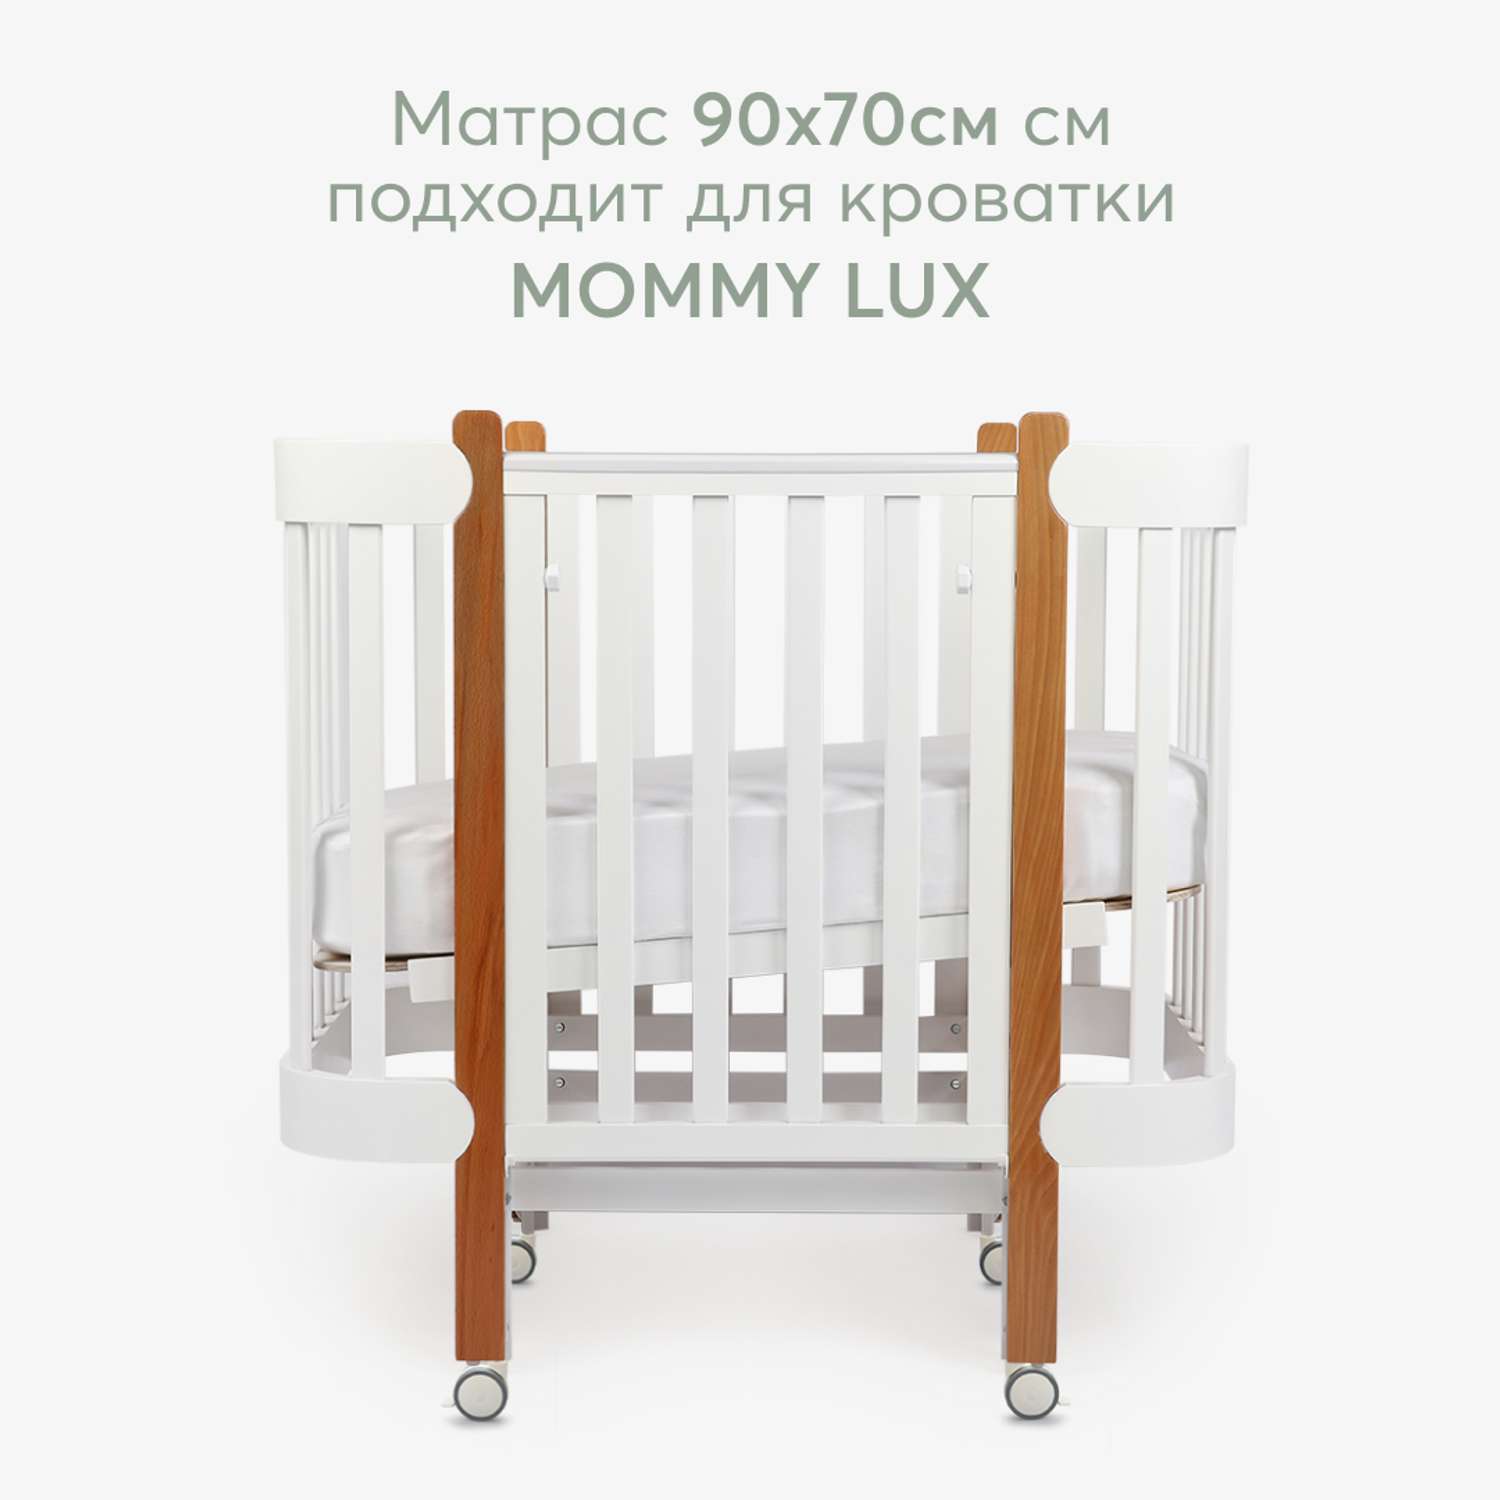 Матрас Happy Baby Mommy Lux - фото 2